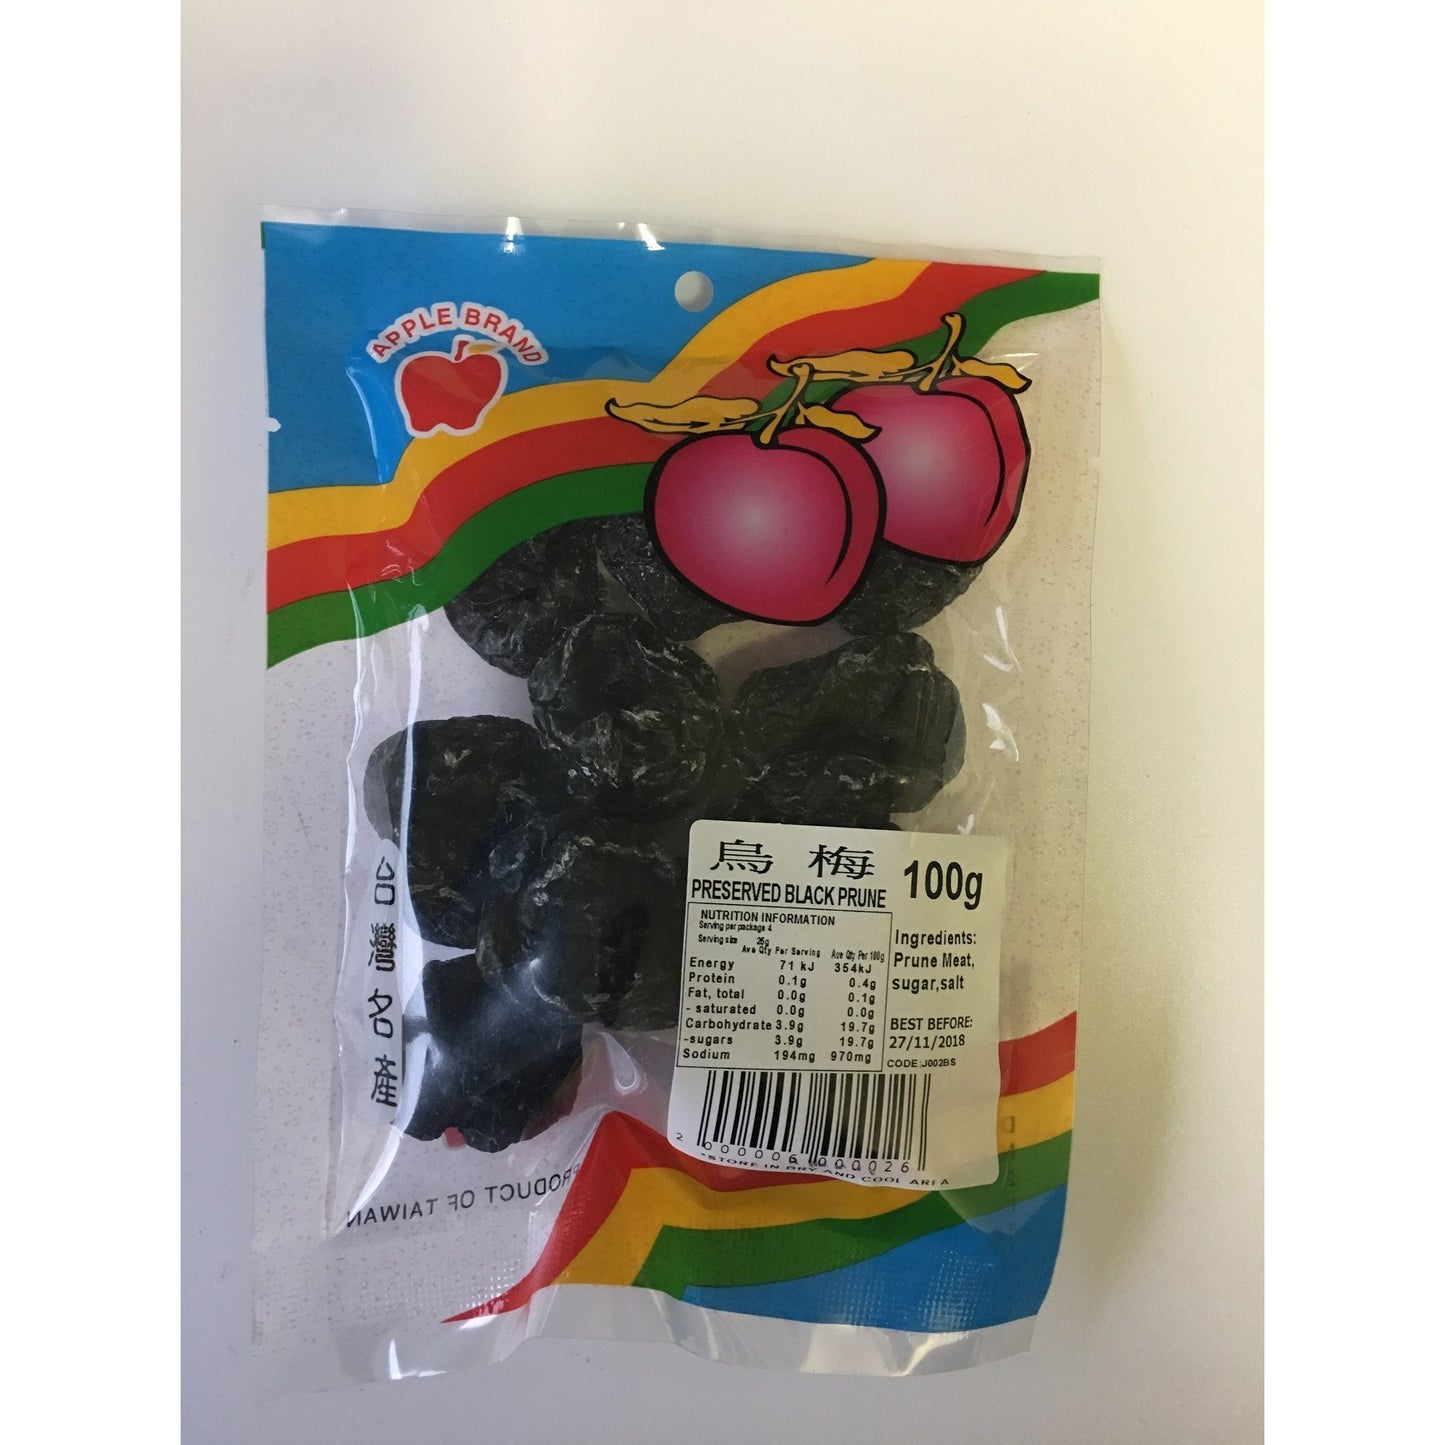 J002BS Apple brand - Preserved Black Prune 100g - 10 packet / 1 Bag - New Eastland Pty Ltd - Asian food wholesalers